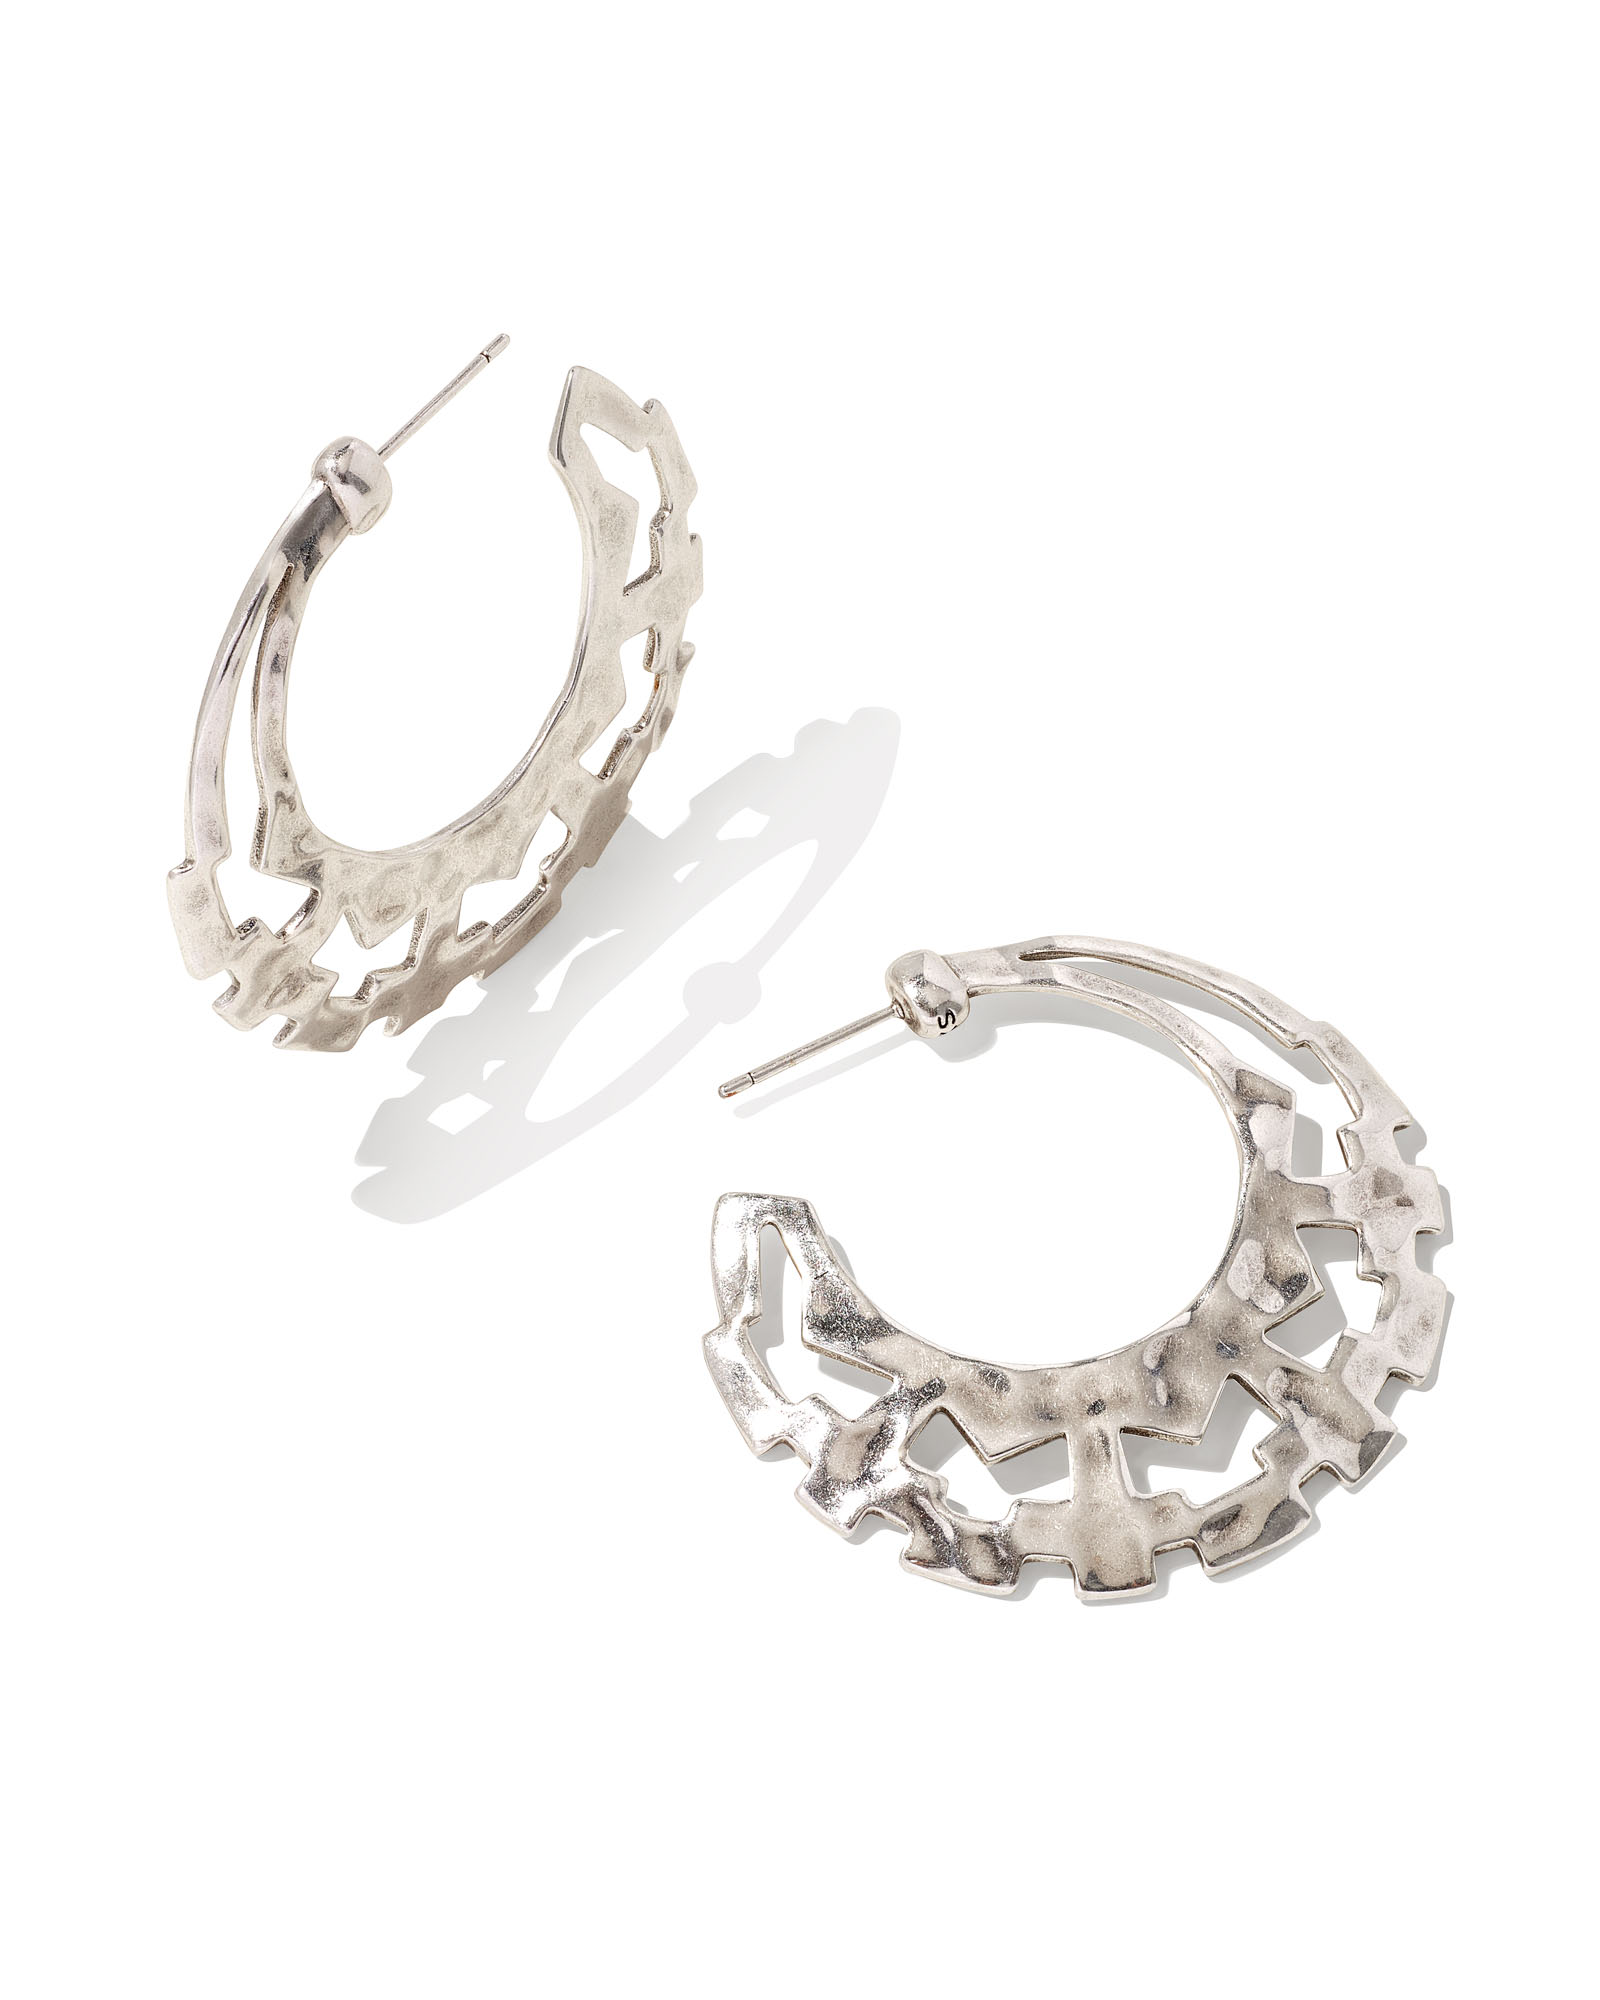 Shiva Hoop Earrings in Vintage Silver | Kendra Scott